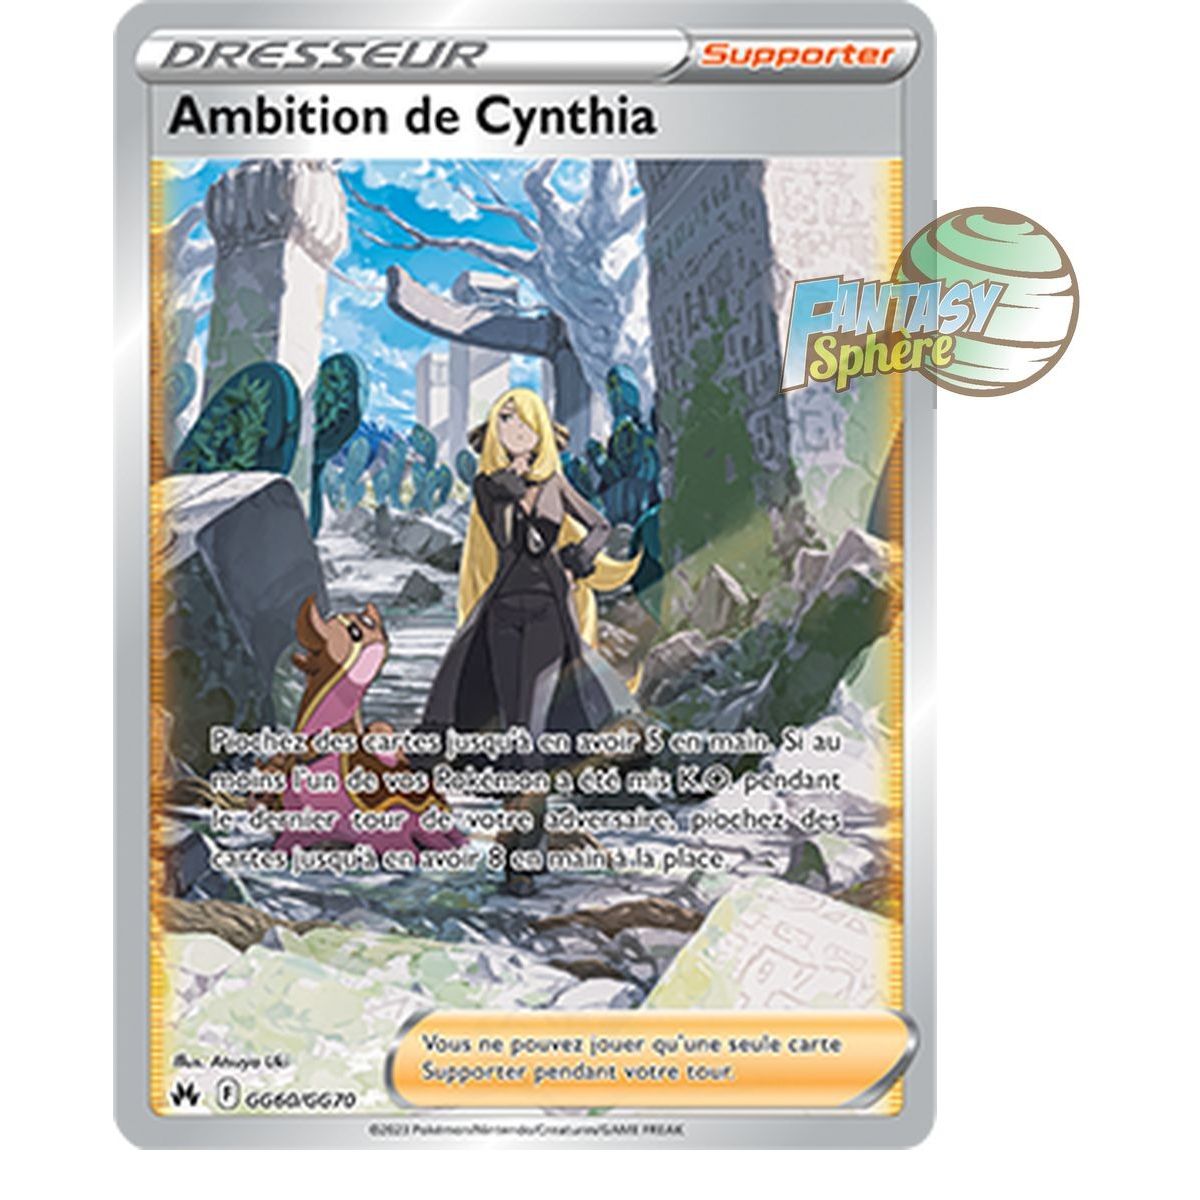 Item Ambition de Cynthia - Rare GG60/GG70 - Epee et Bouclier 12.5 Zenith Supreme